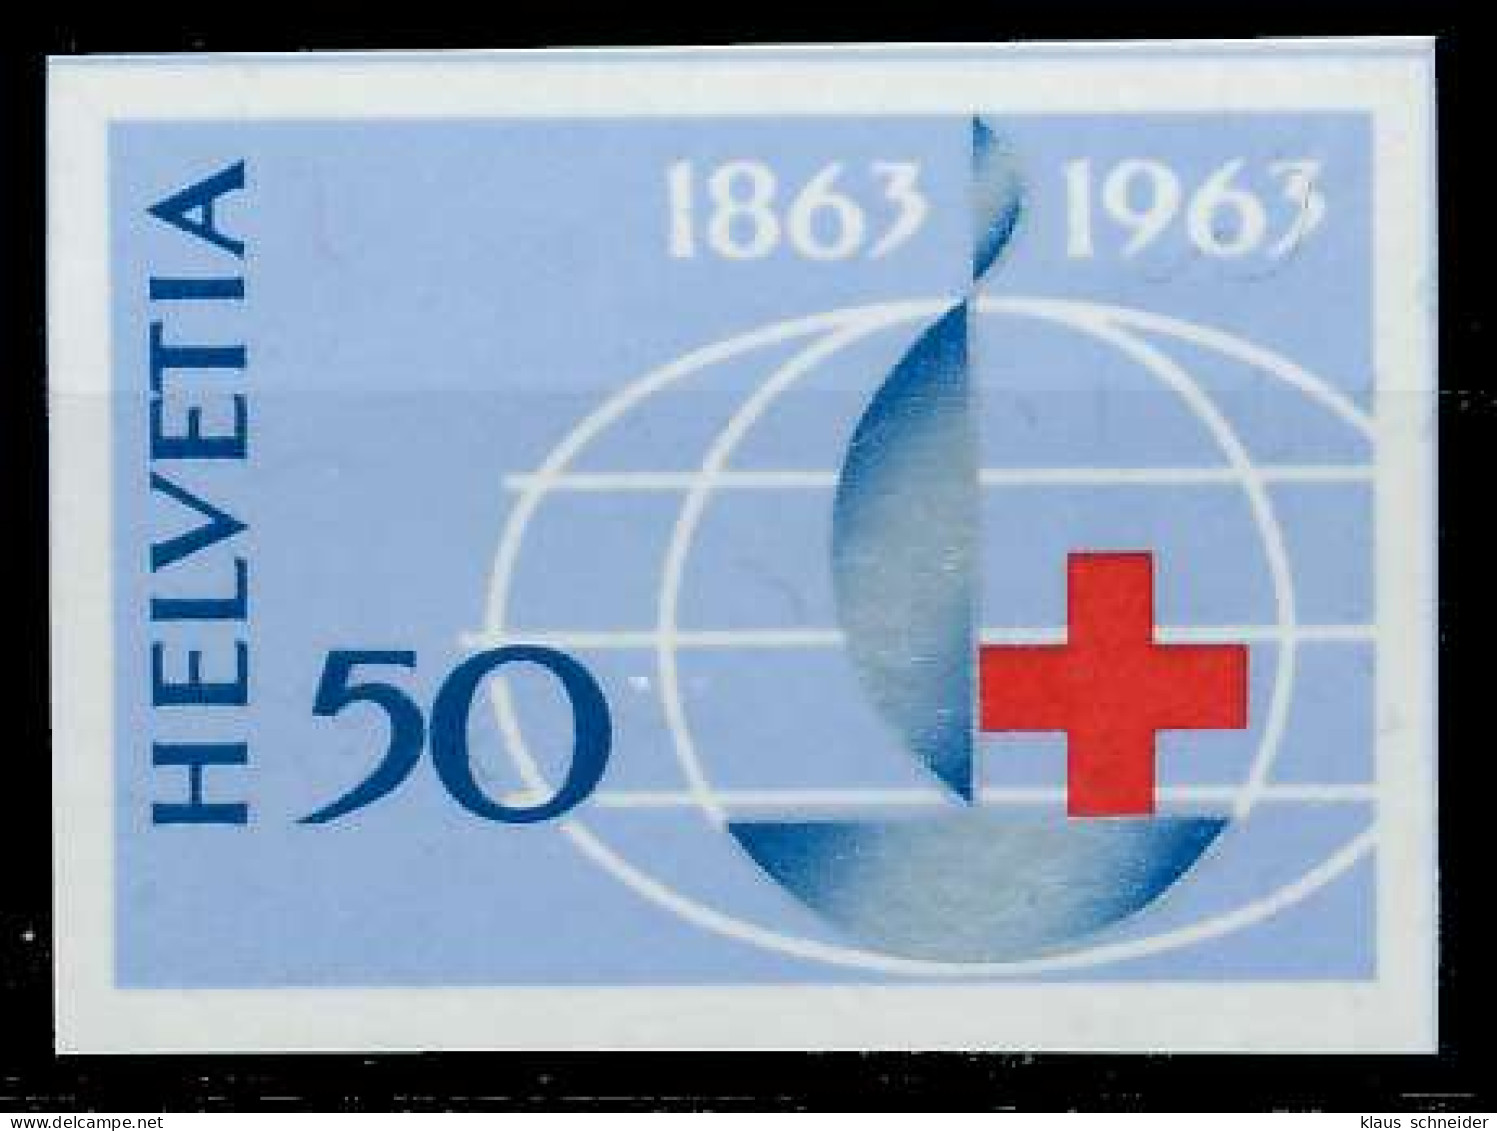 SCHWEIZ 1963 Nr 774 Postfrisch S2B906A - Unused Stamps